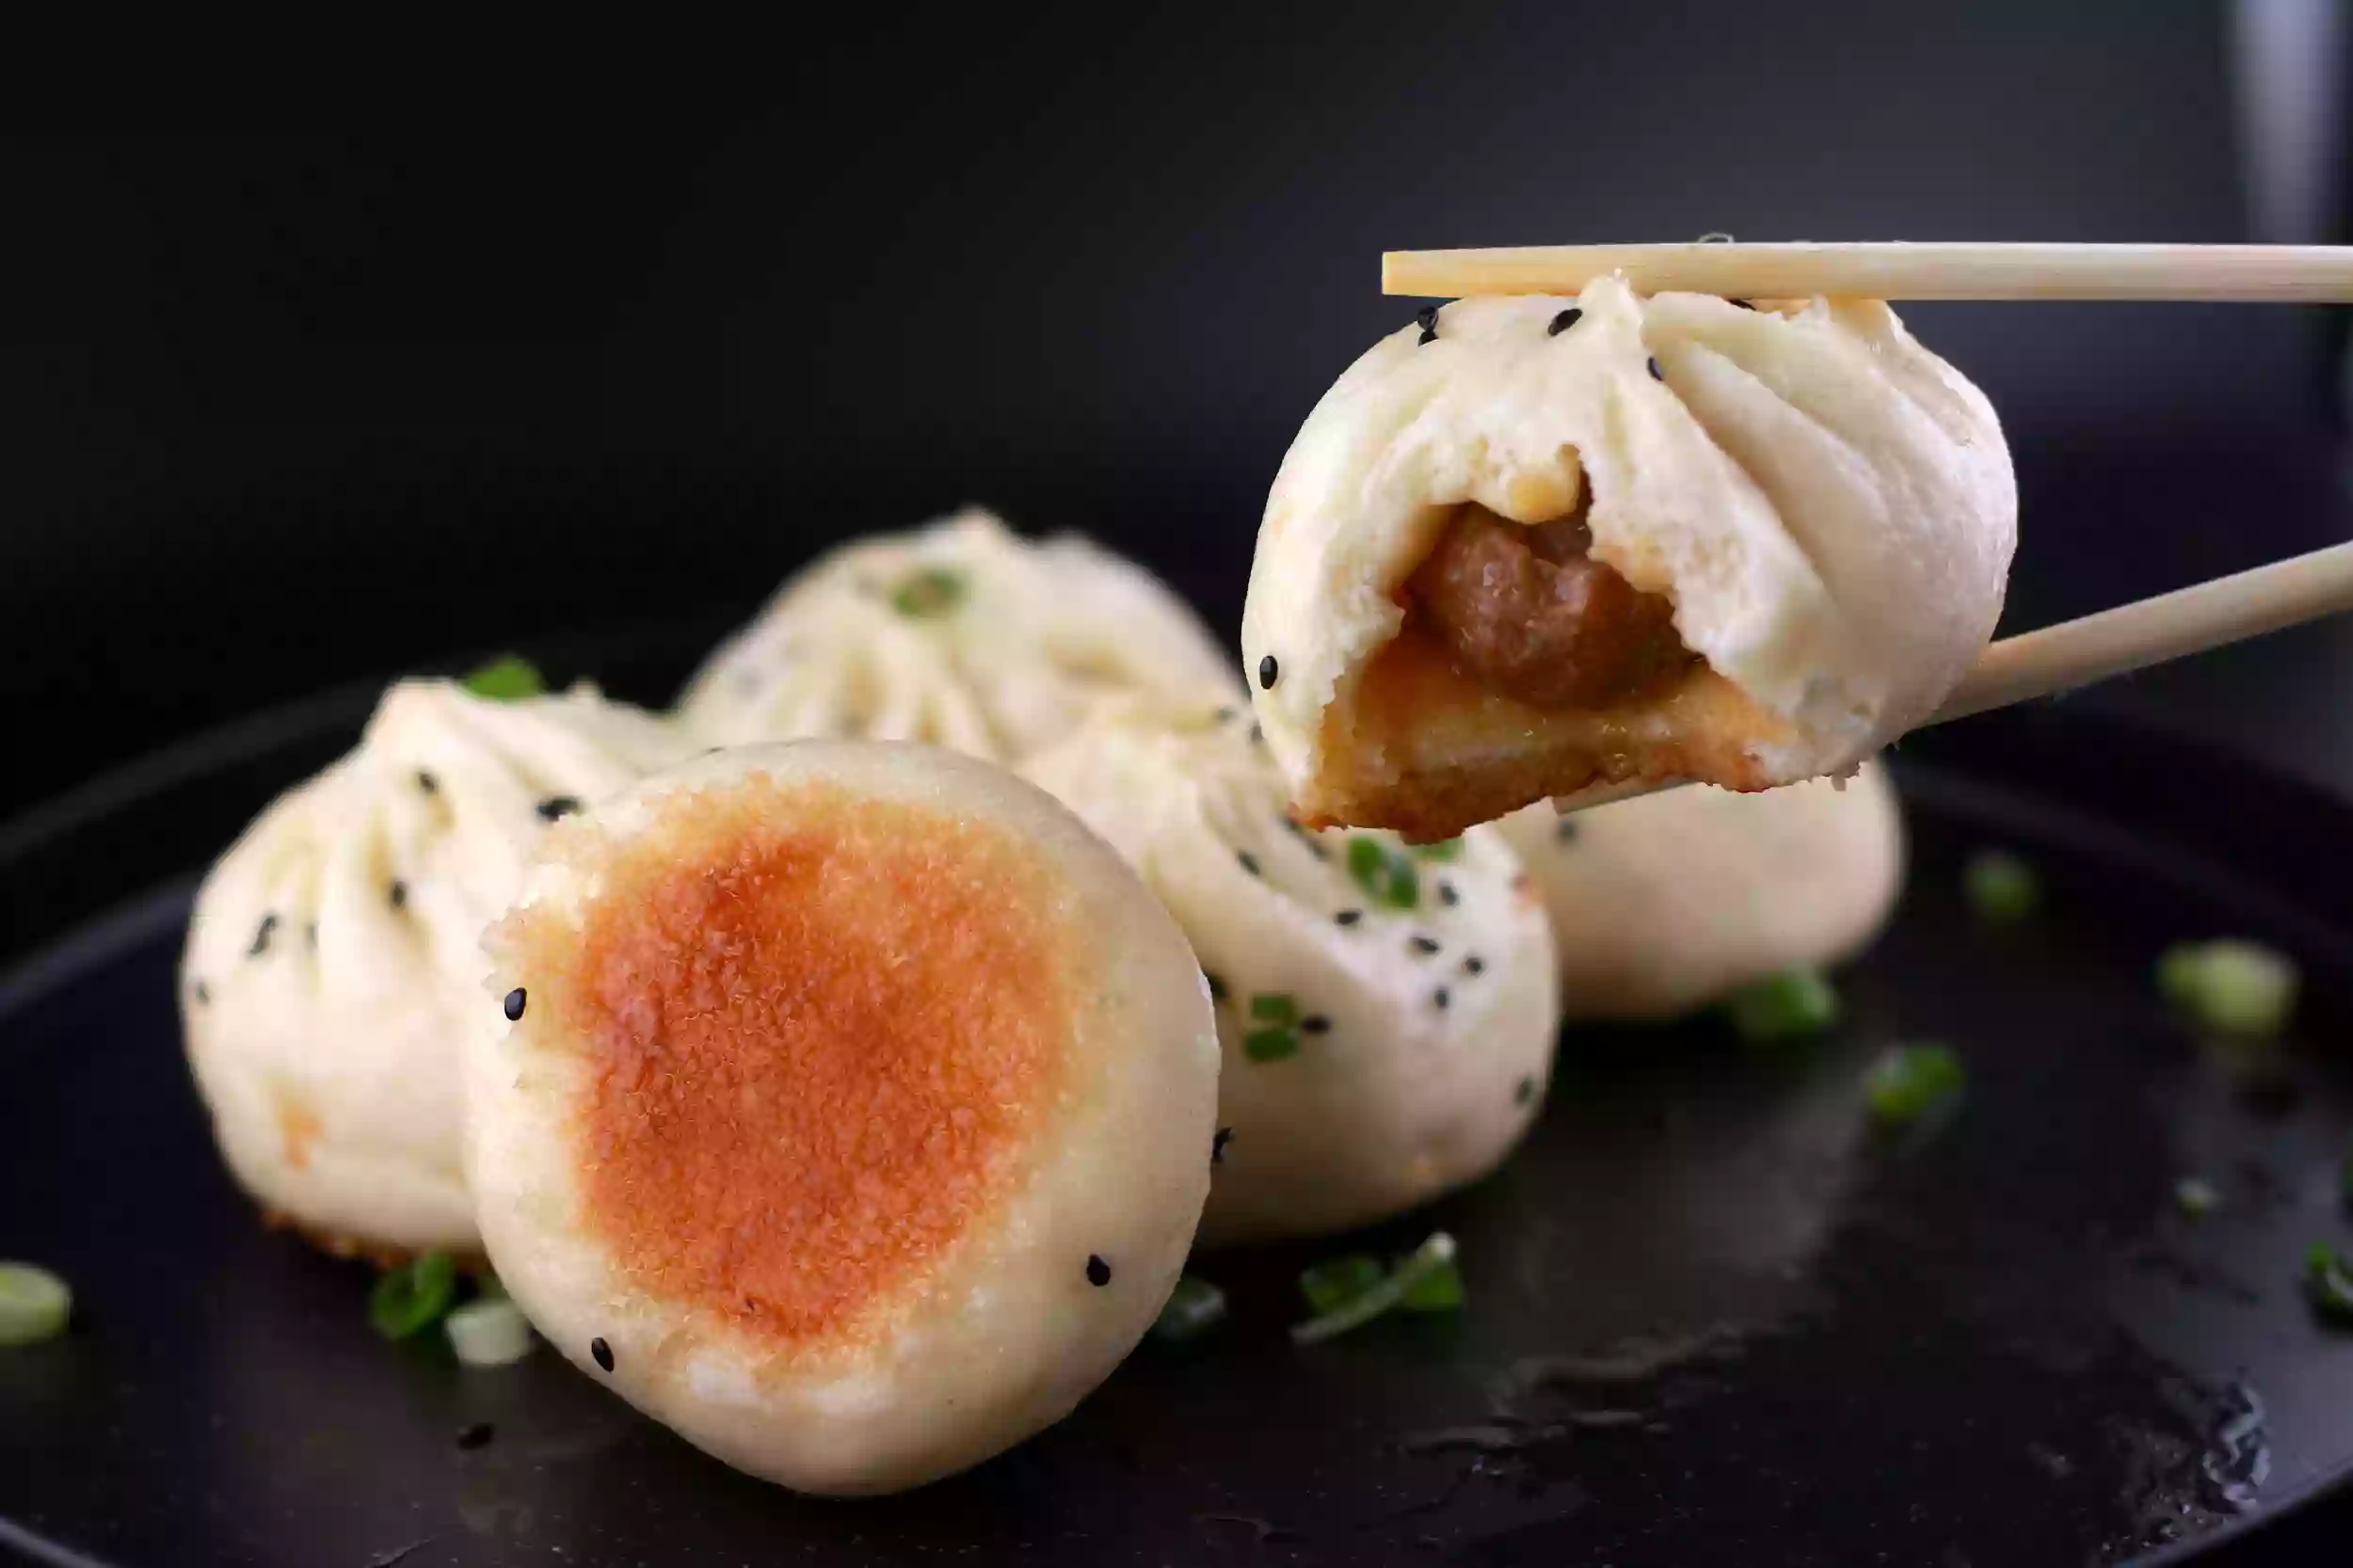 Sizzle: Dumpling & Authentic Chinese Cuisine